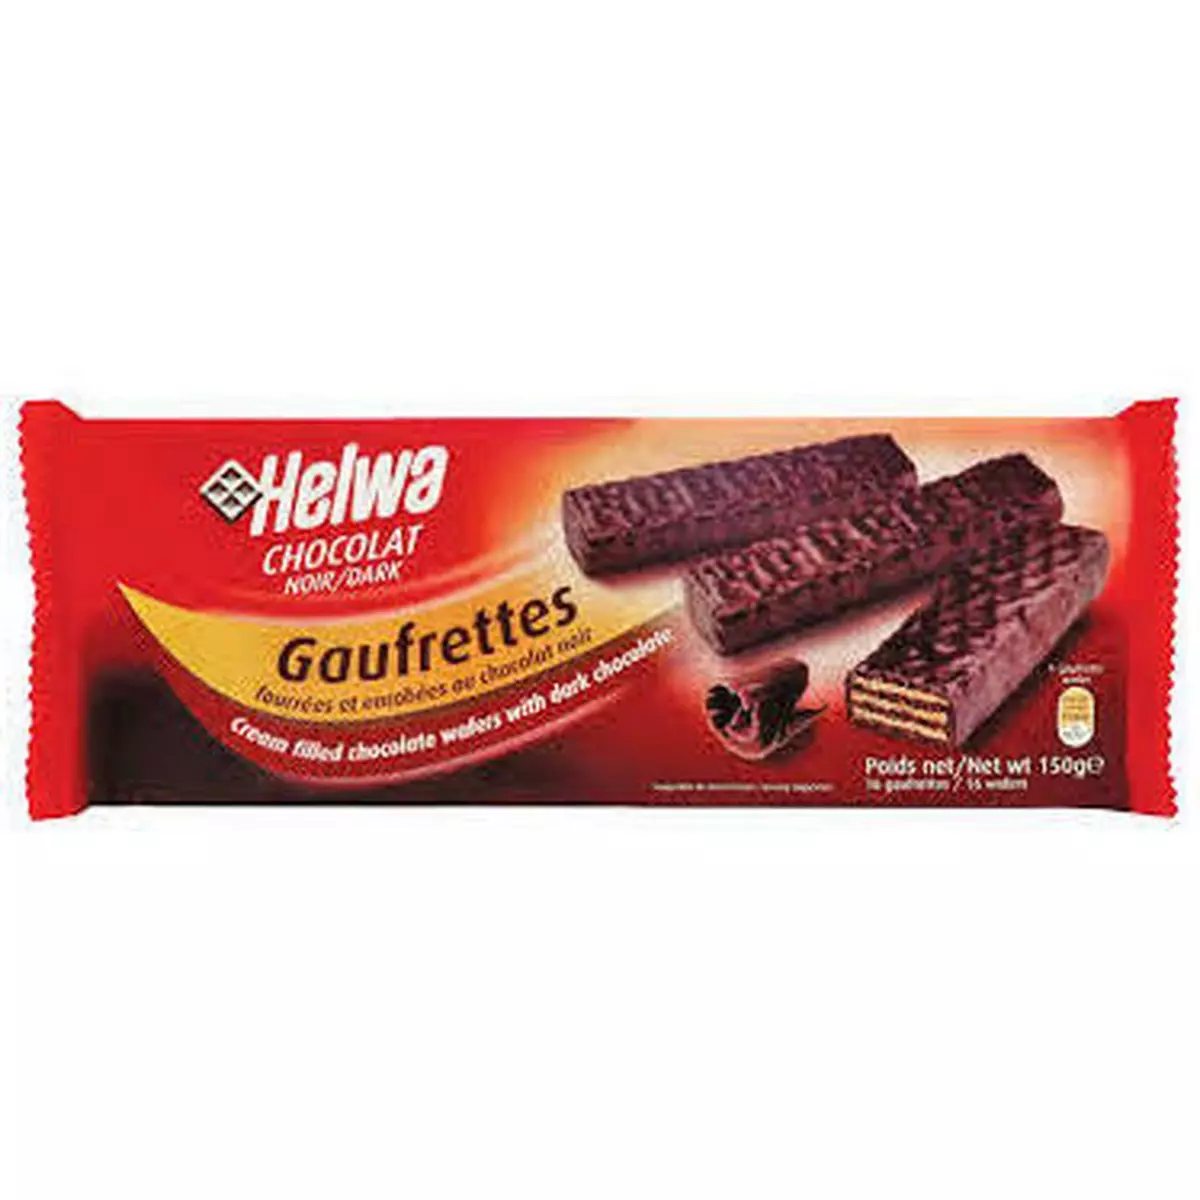 HELWA Gaufrettes biscuits fourrés et enrobés au chocolat noir 150g